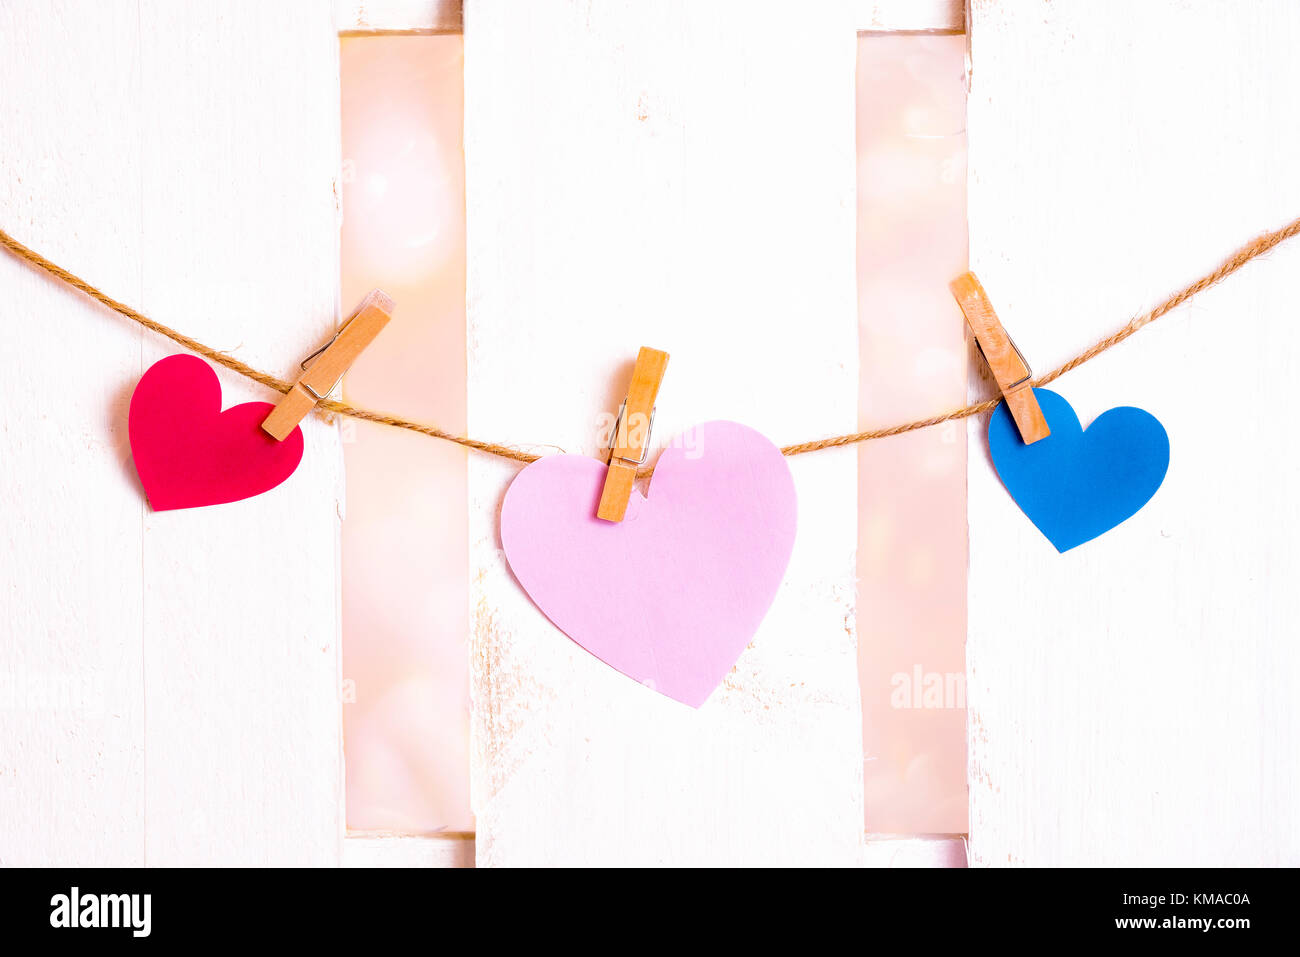 Il giorno di san valentino immagine con un grande cuore rosa al centro, uno rosso e uno blu sui lati, costituito da carta e legato a una stringa con clip in legno Foto Stock